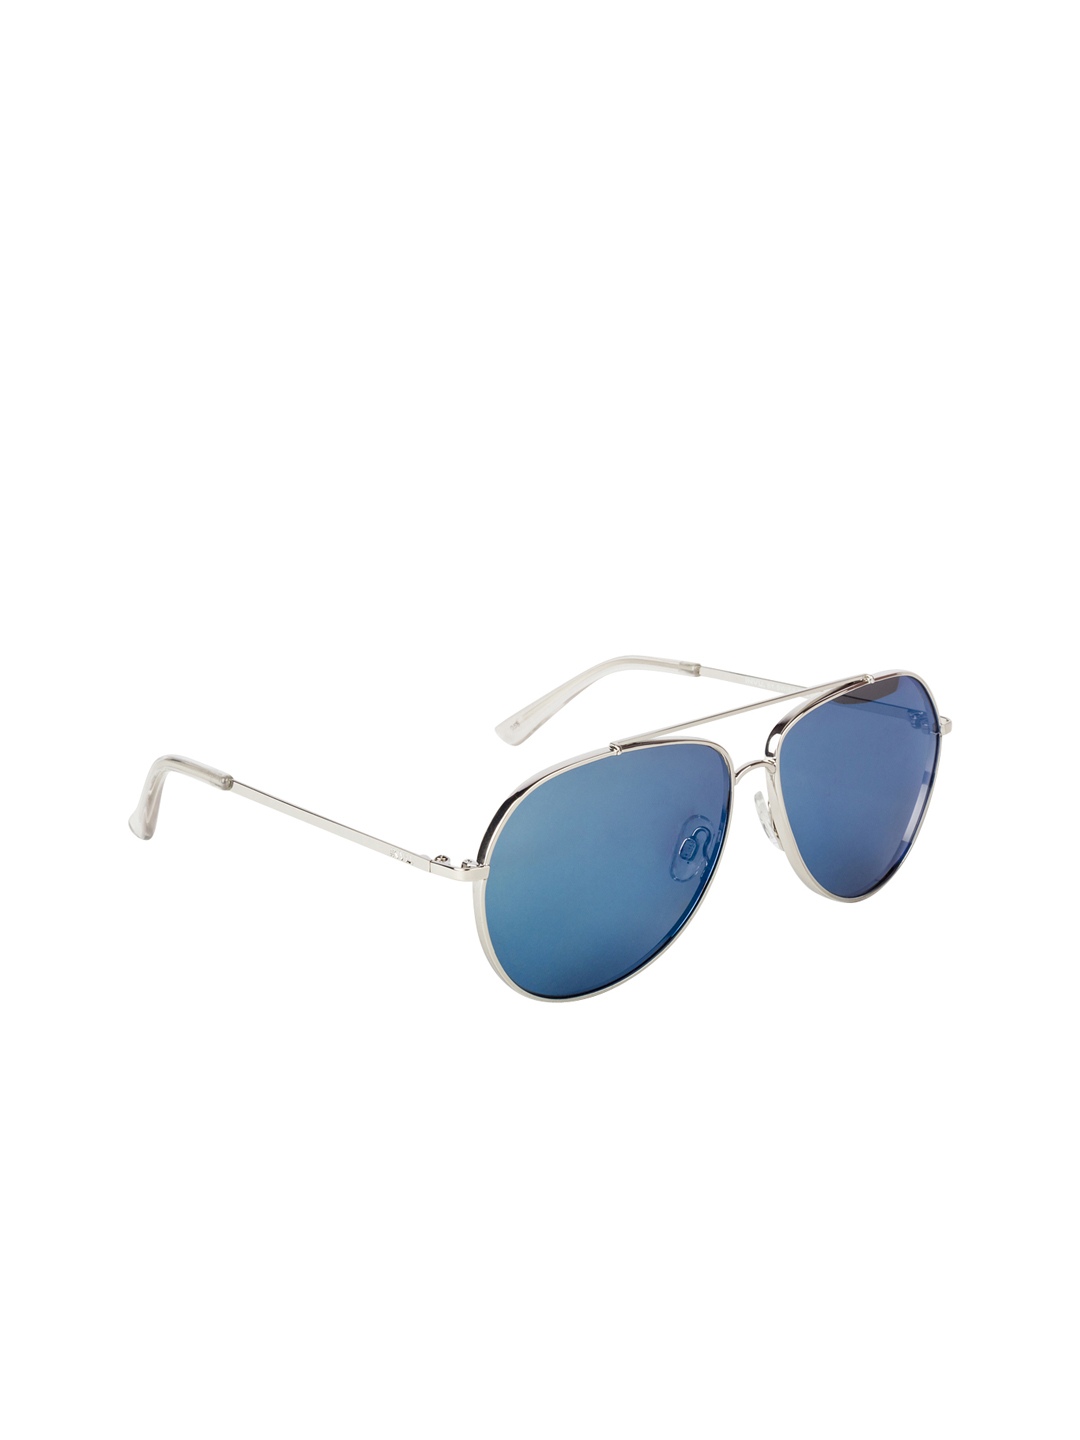 

INVU Men Aviator Sunglasses T1909C, Blue